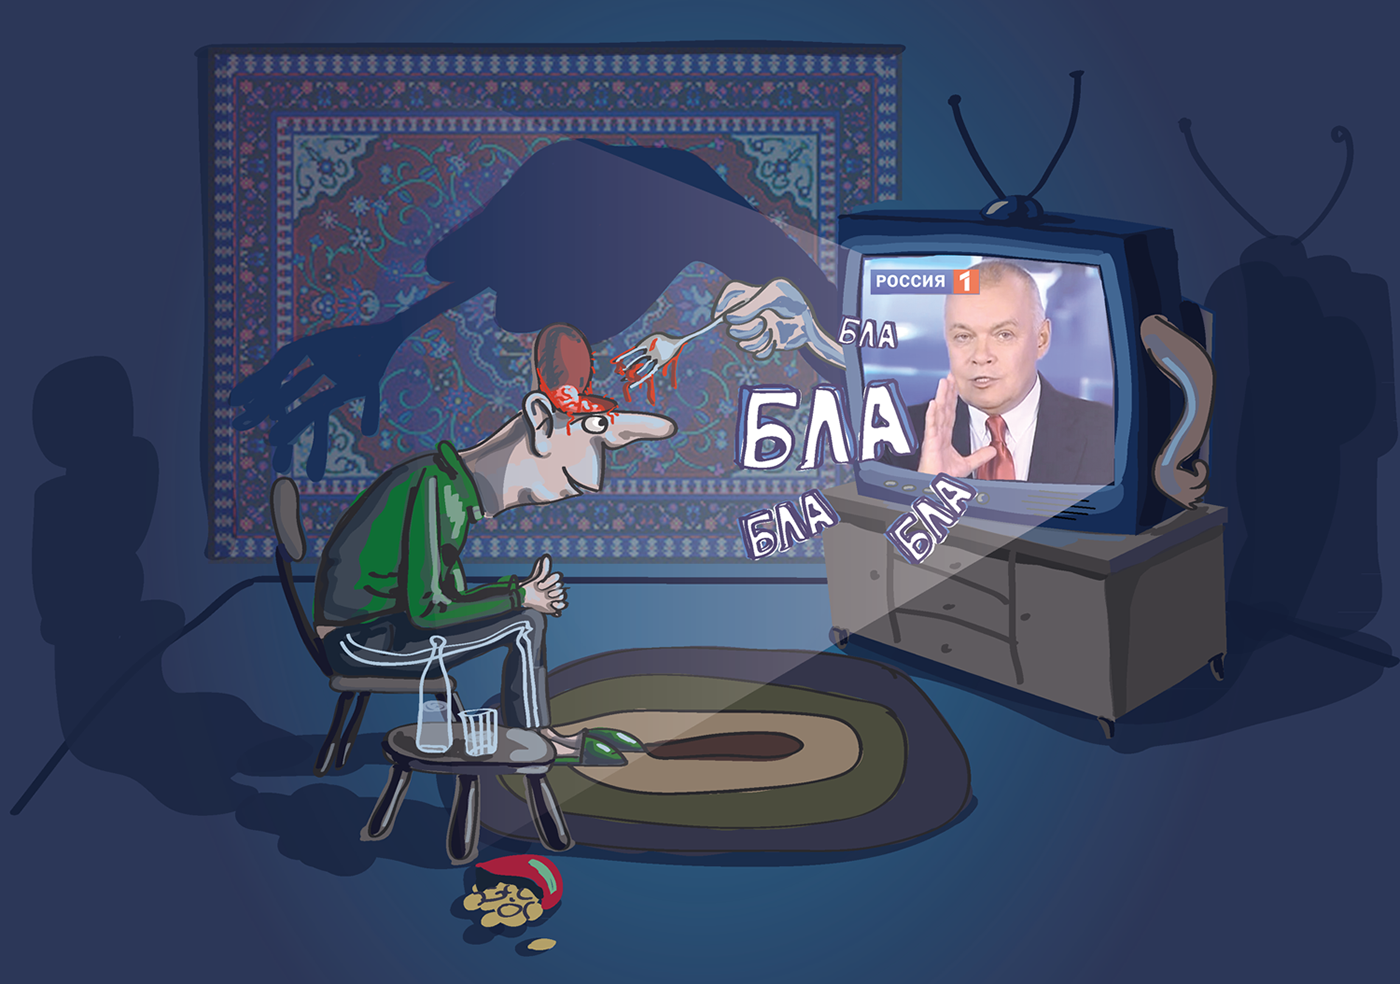 Информационная война федеральных телеканалов против «Красных губернаторов».